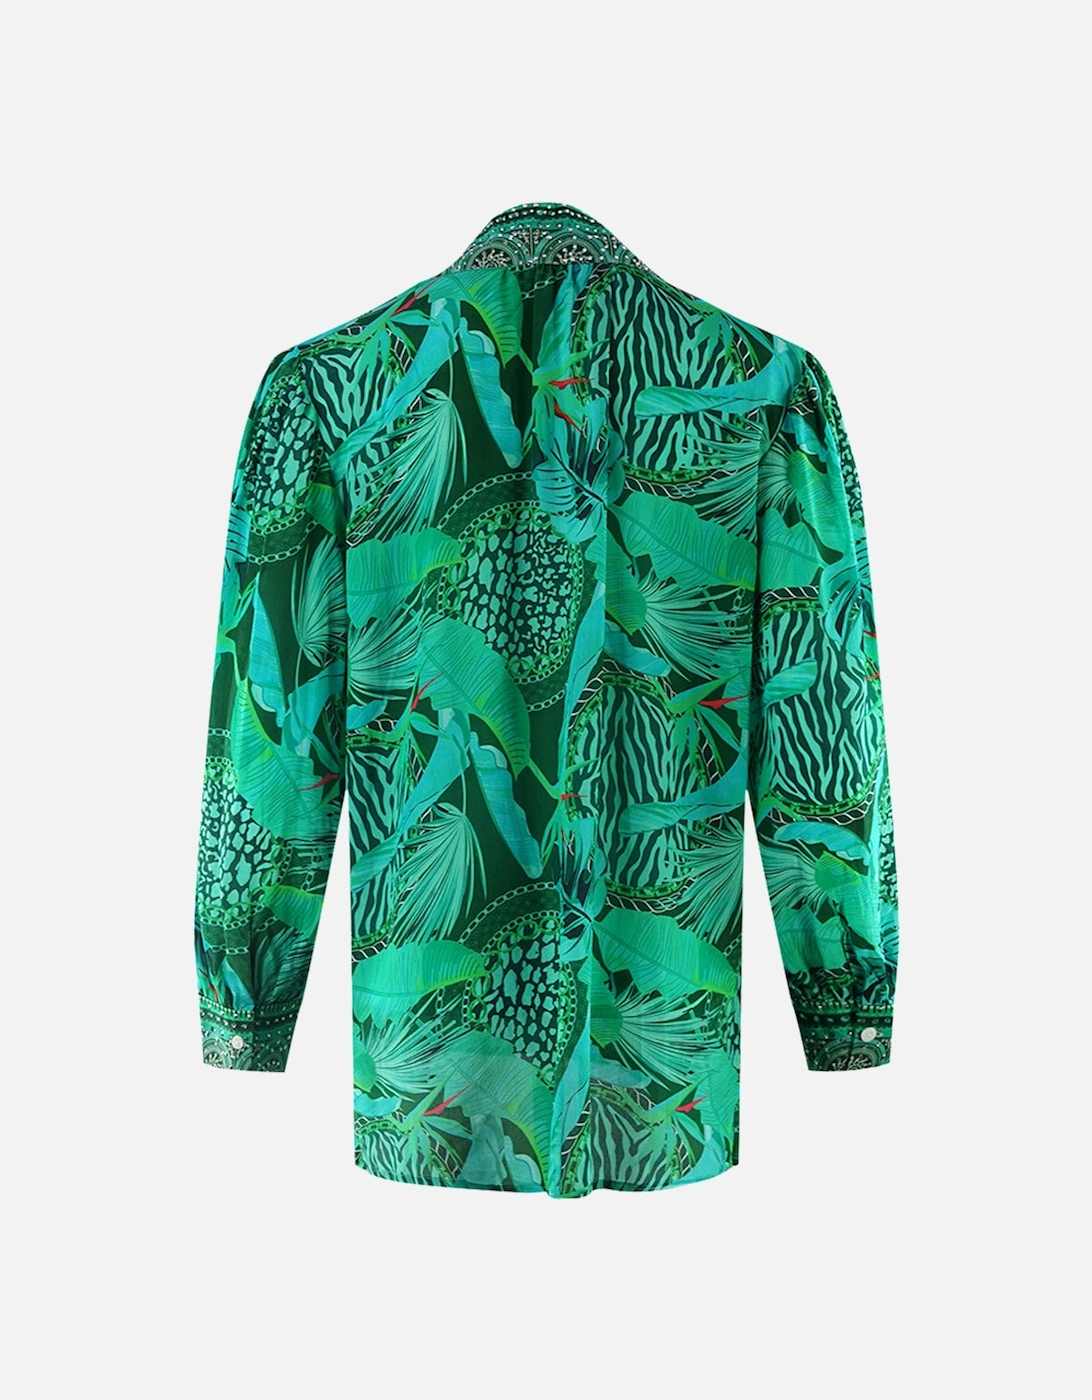 Valdivian Rainforest 1202114 Green Long Sleeve Blouse Silk Shirt